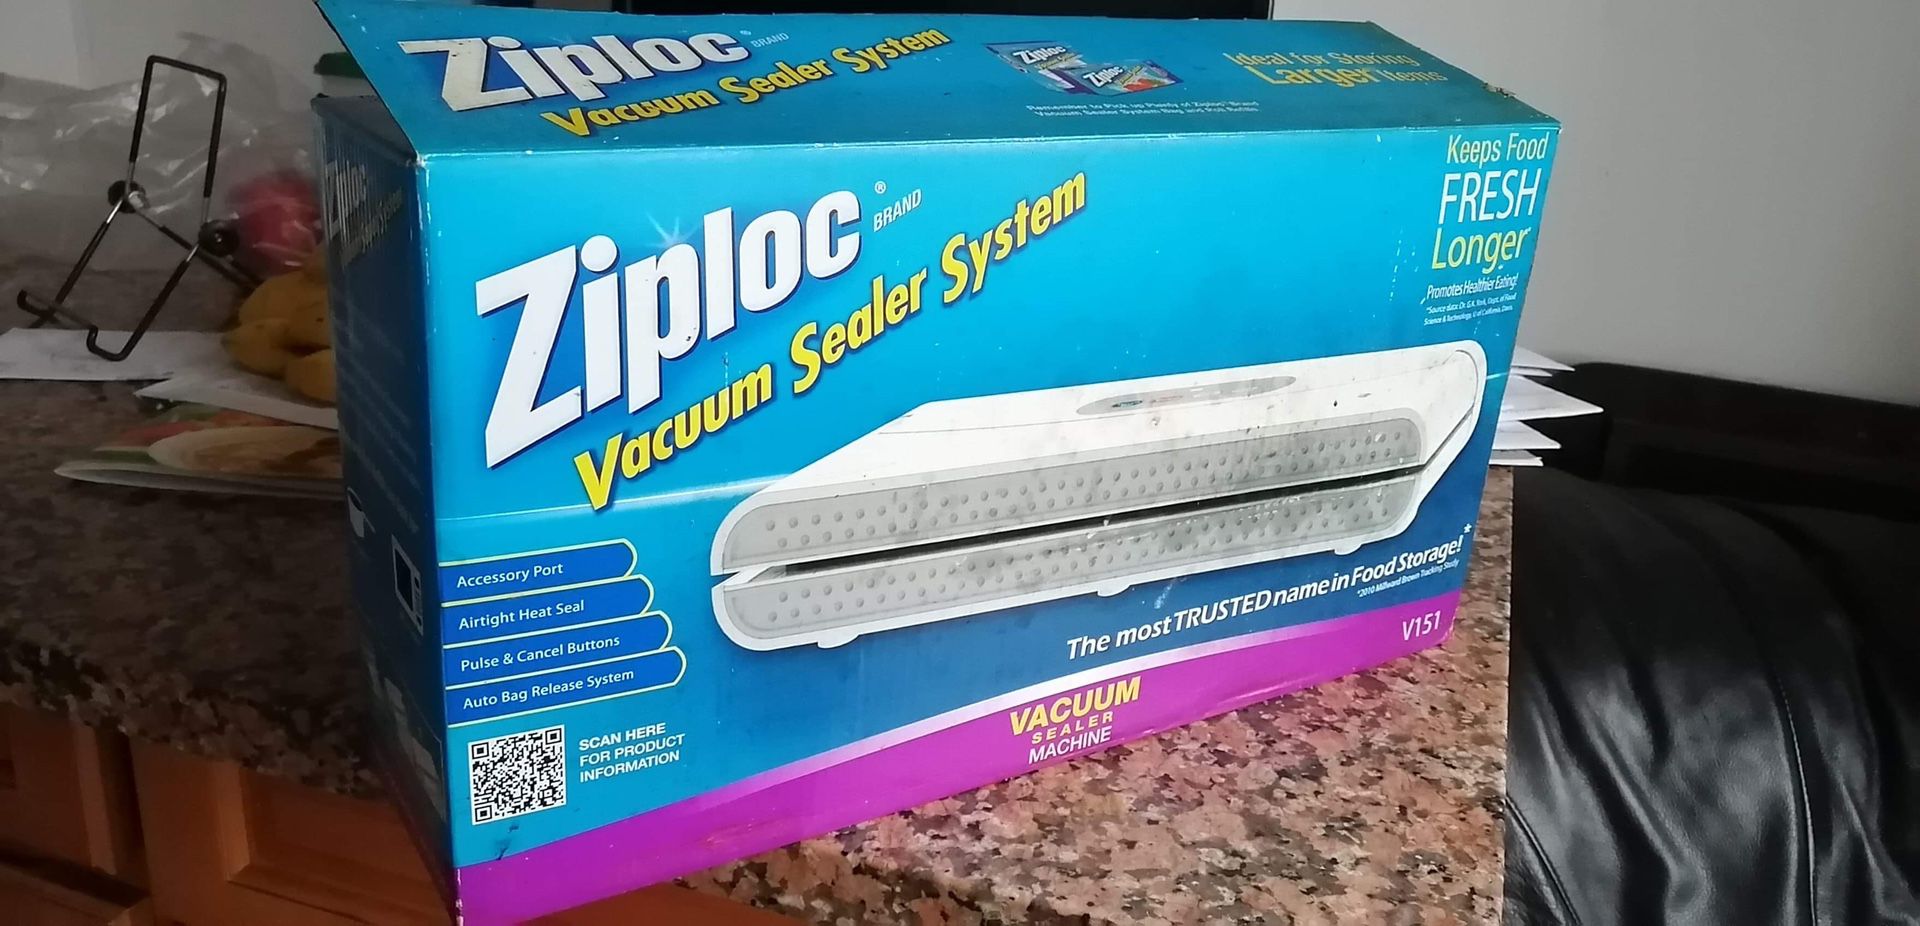 Ziploc vacuum sealer system